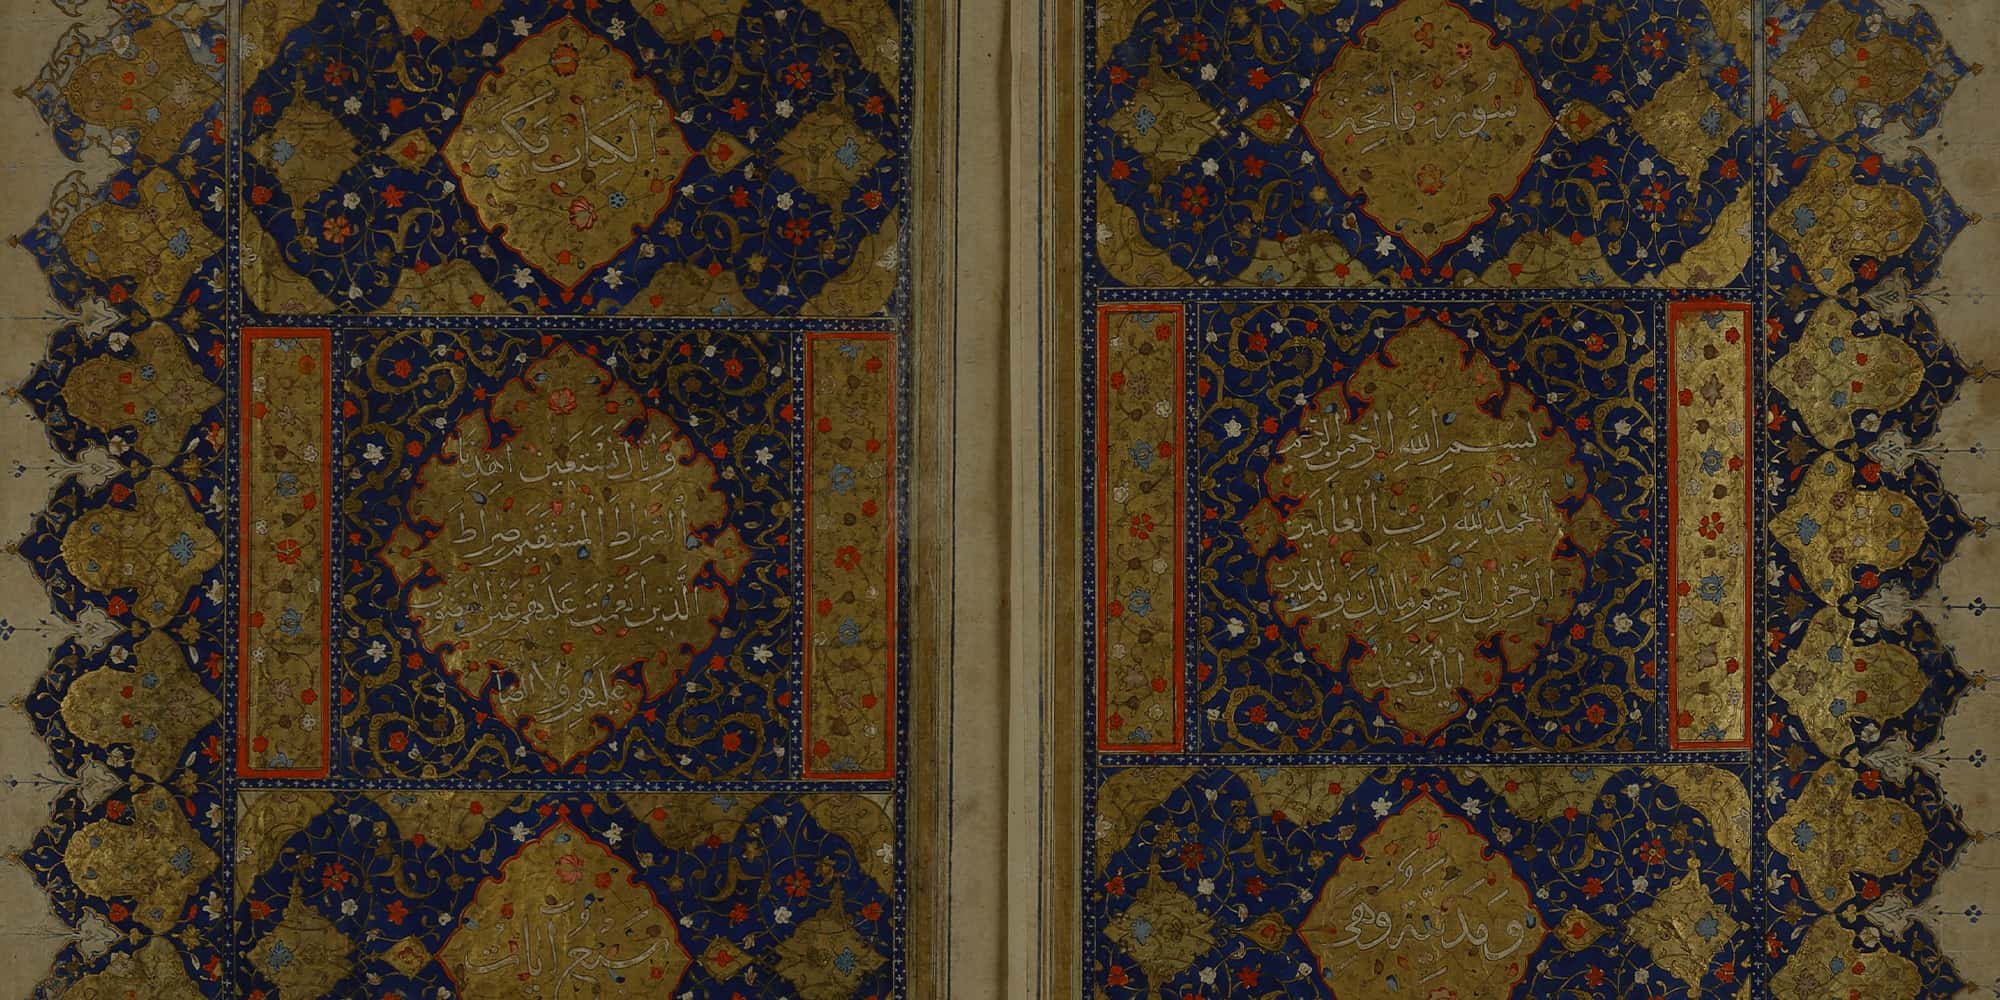 Islamic Manuscripts